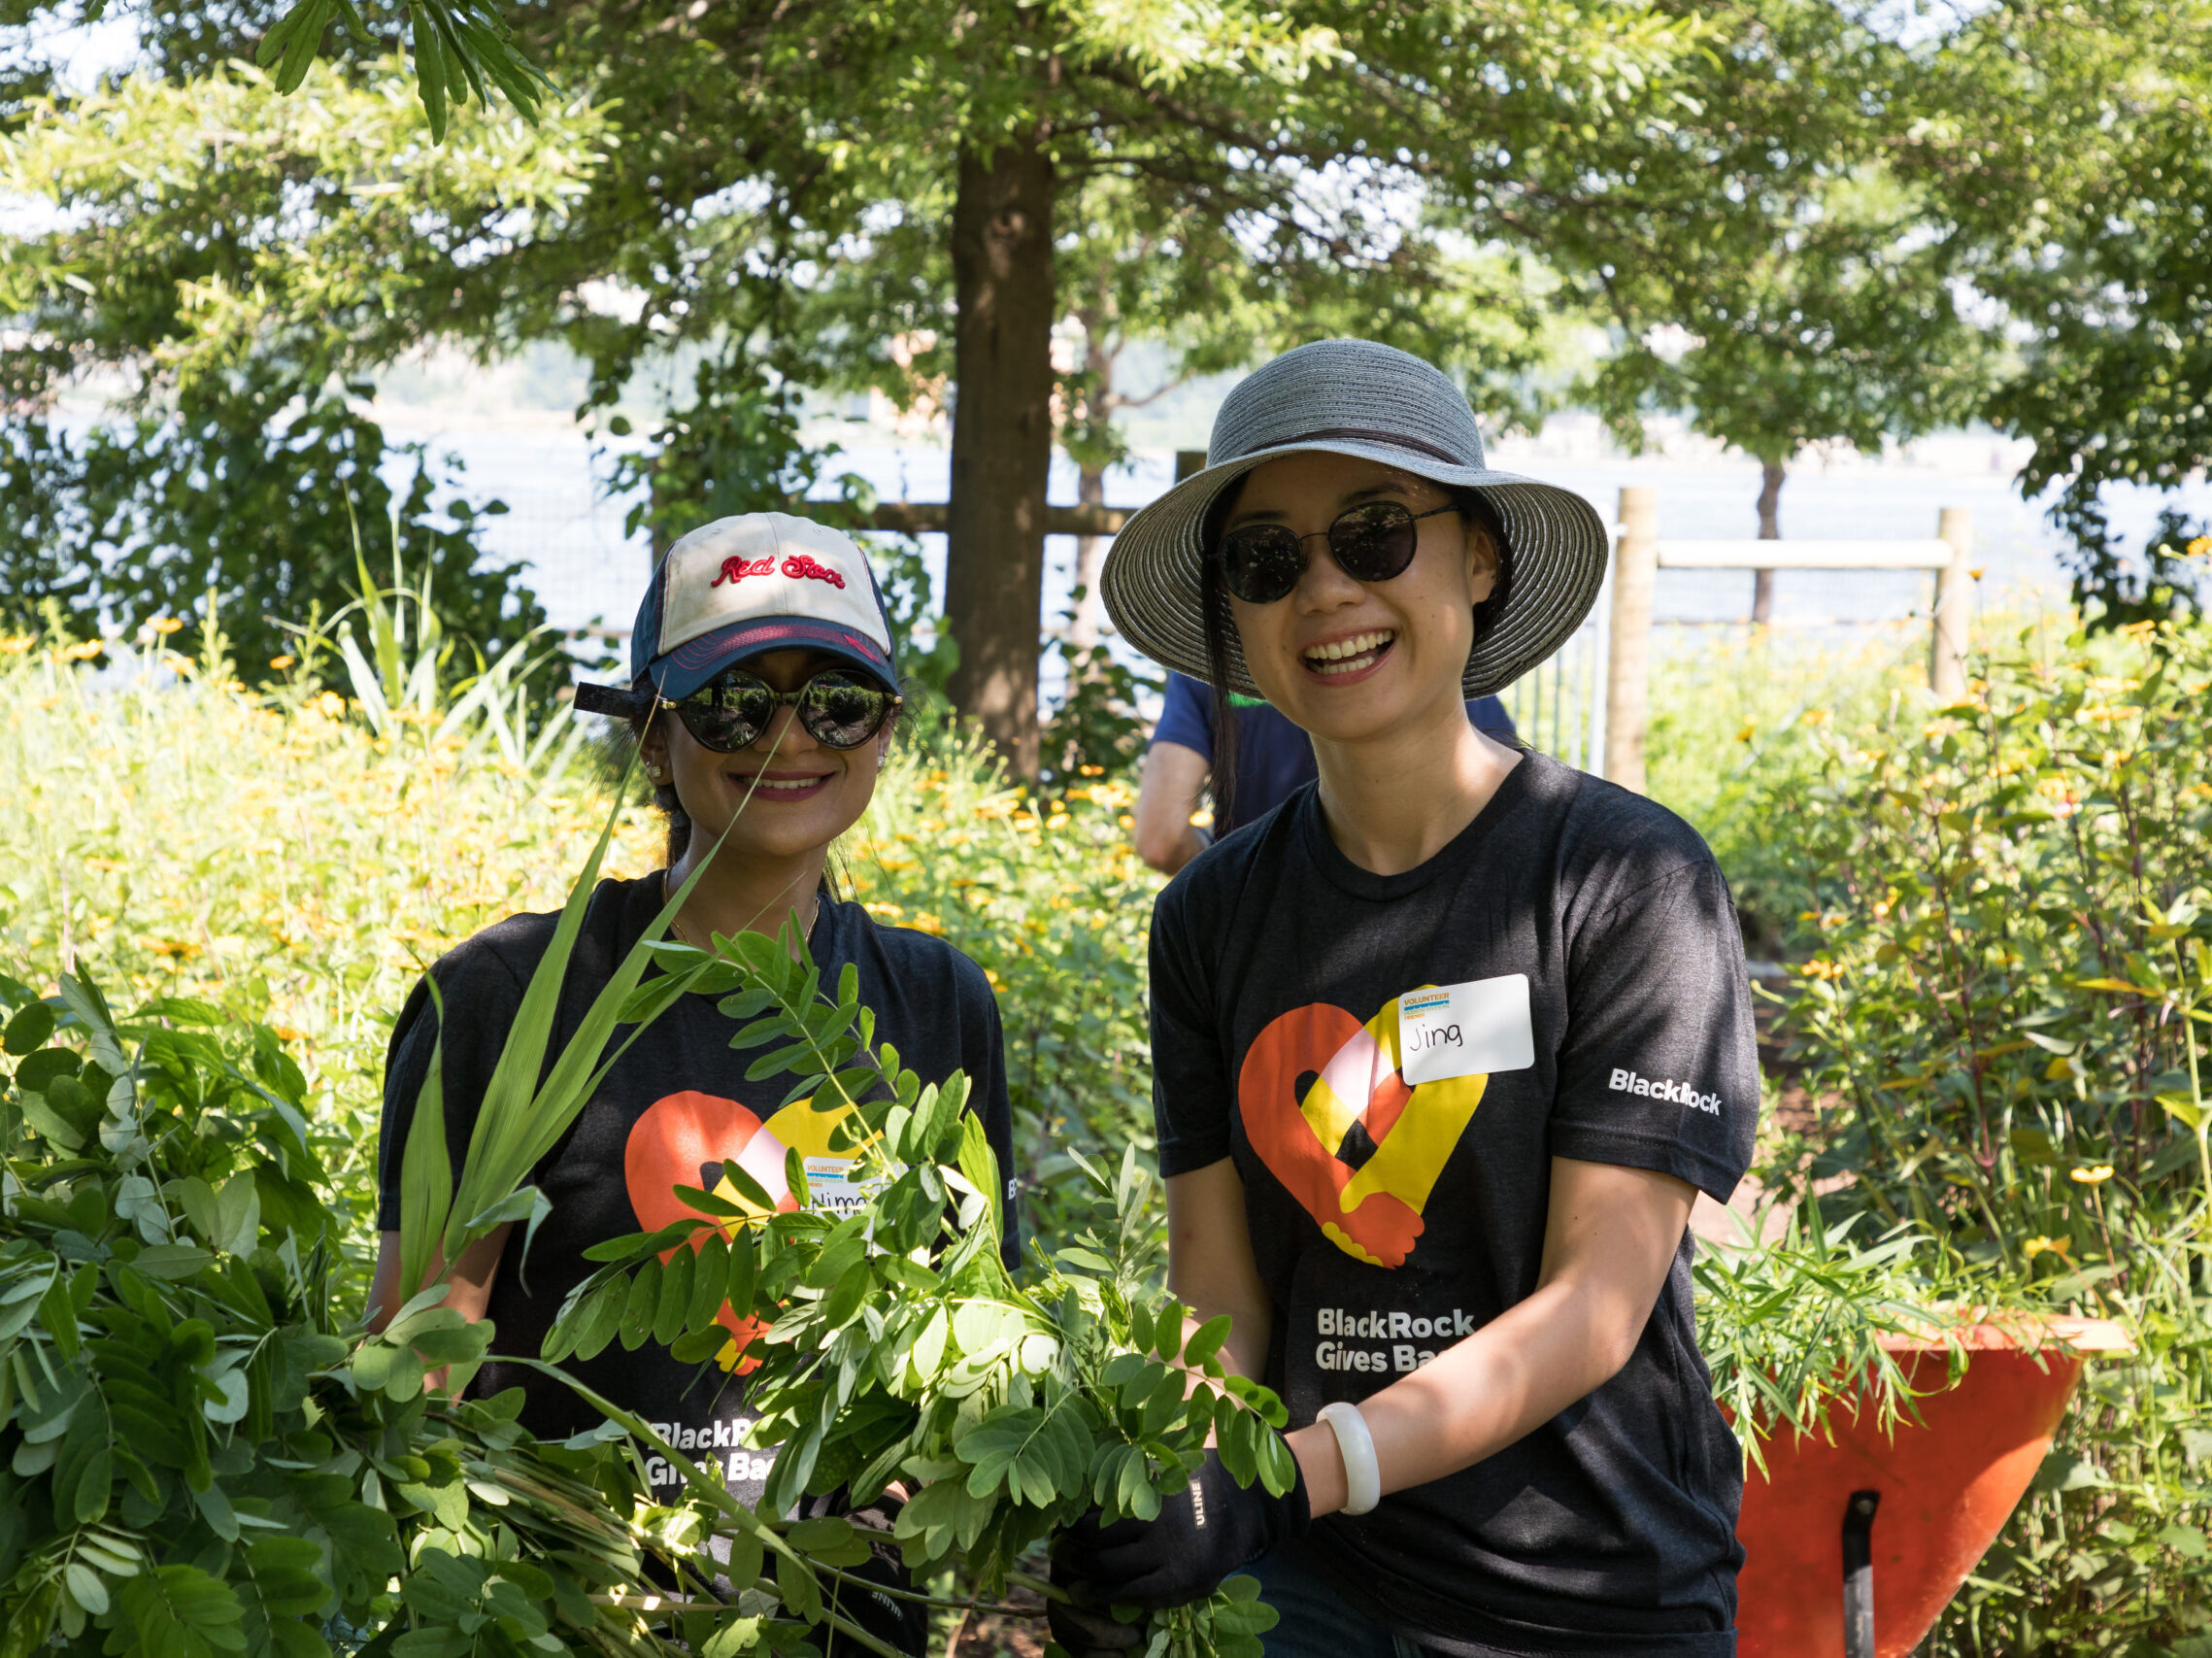 Two volunteer gardeners help at the community garden